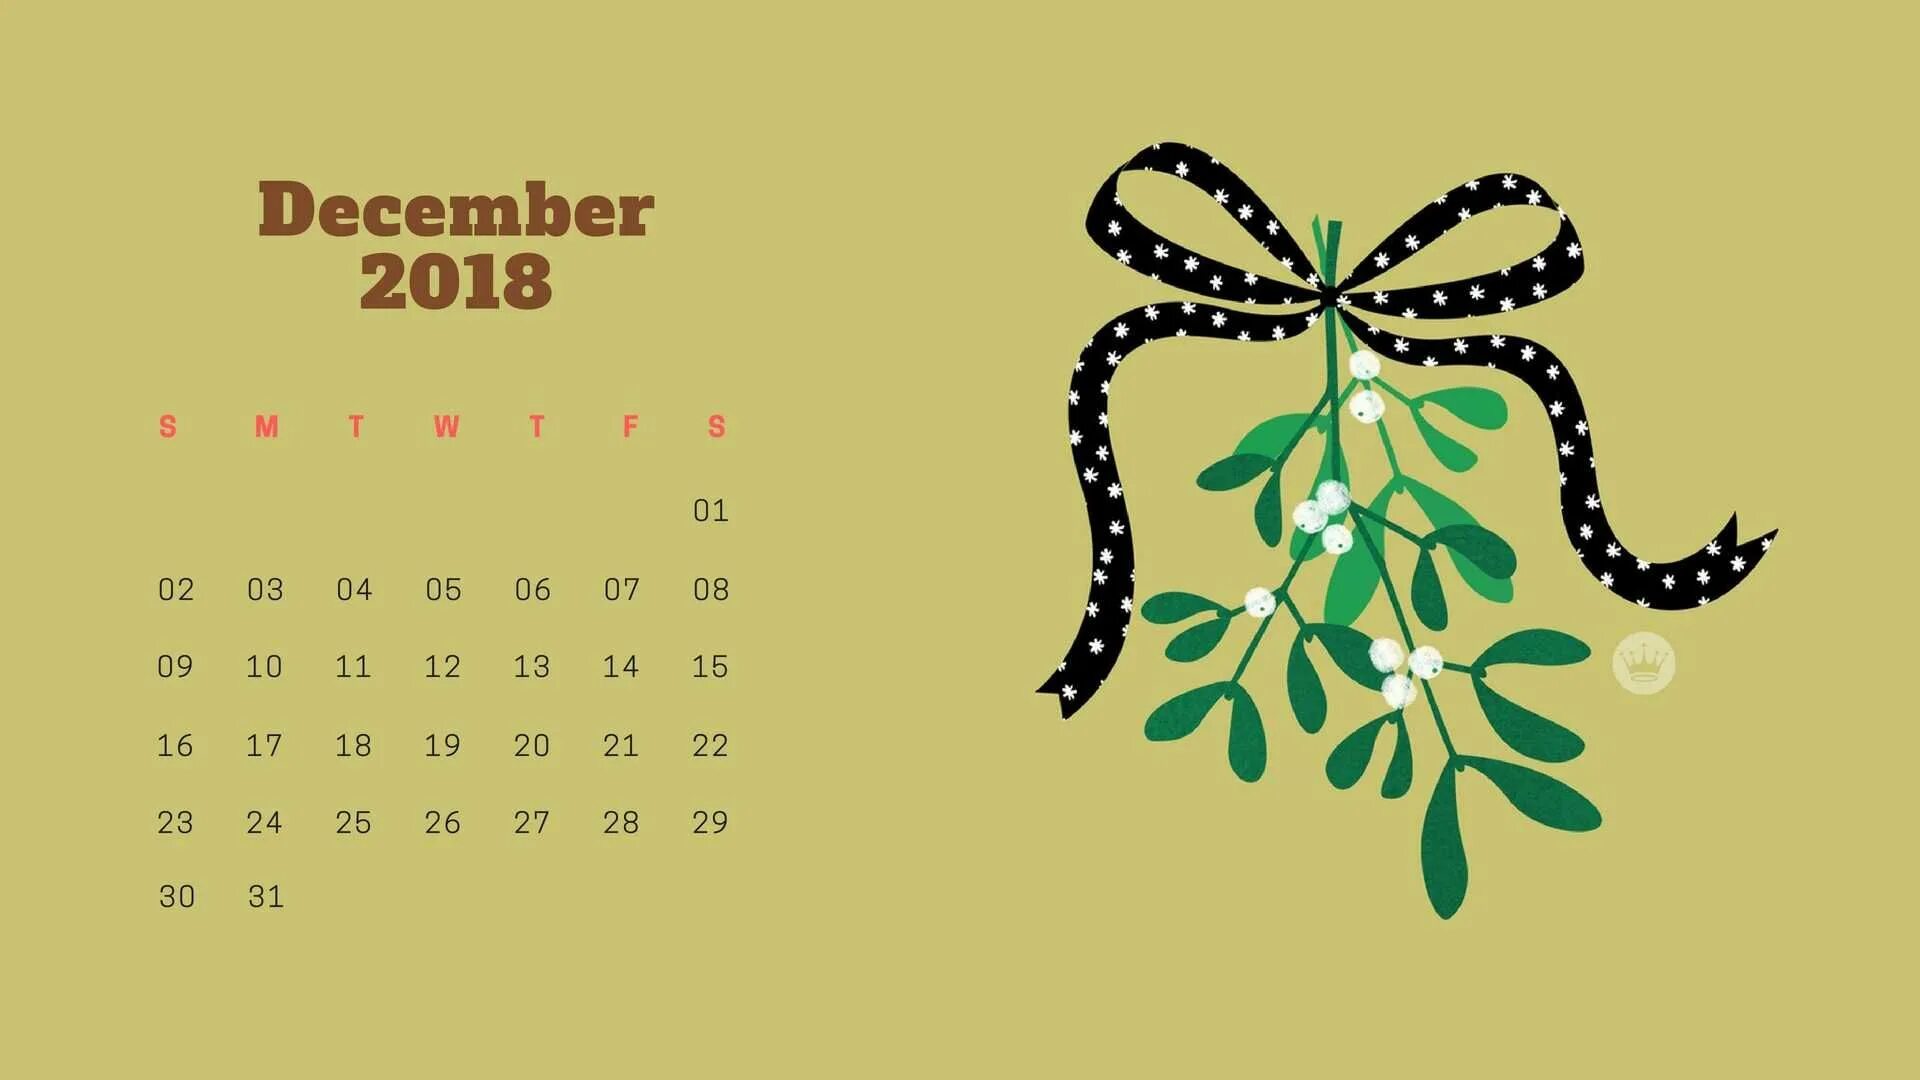 Обои на телефон с календарем. Новогодние обои с календарем. Обои на рабочий стол календарь декабрь. Новогодняя заставка с календарем. Обои на рабочий стол новый год с календарем.